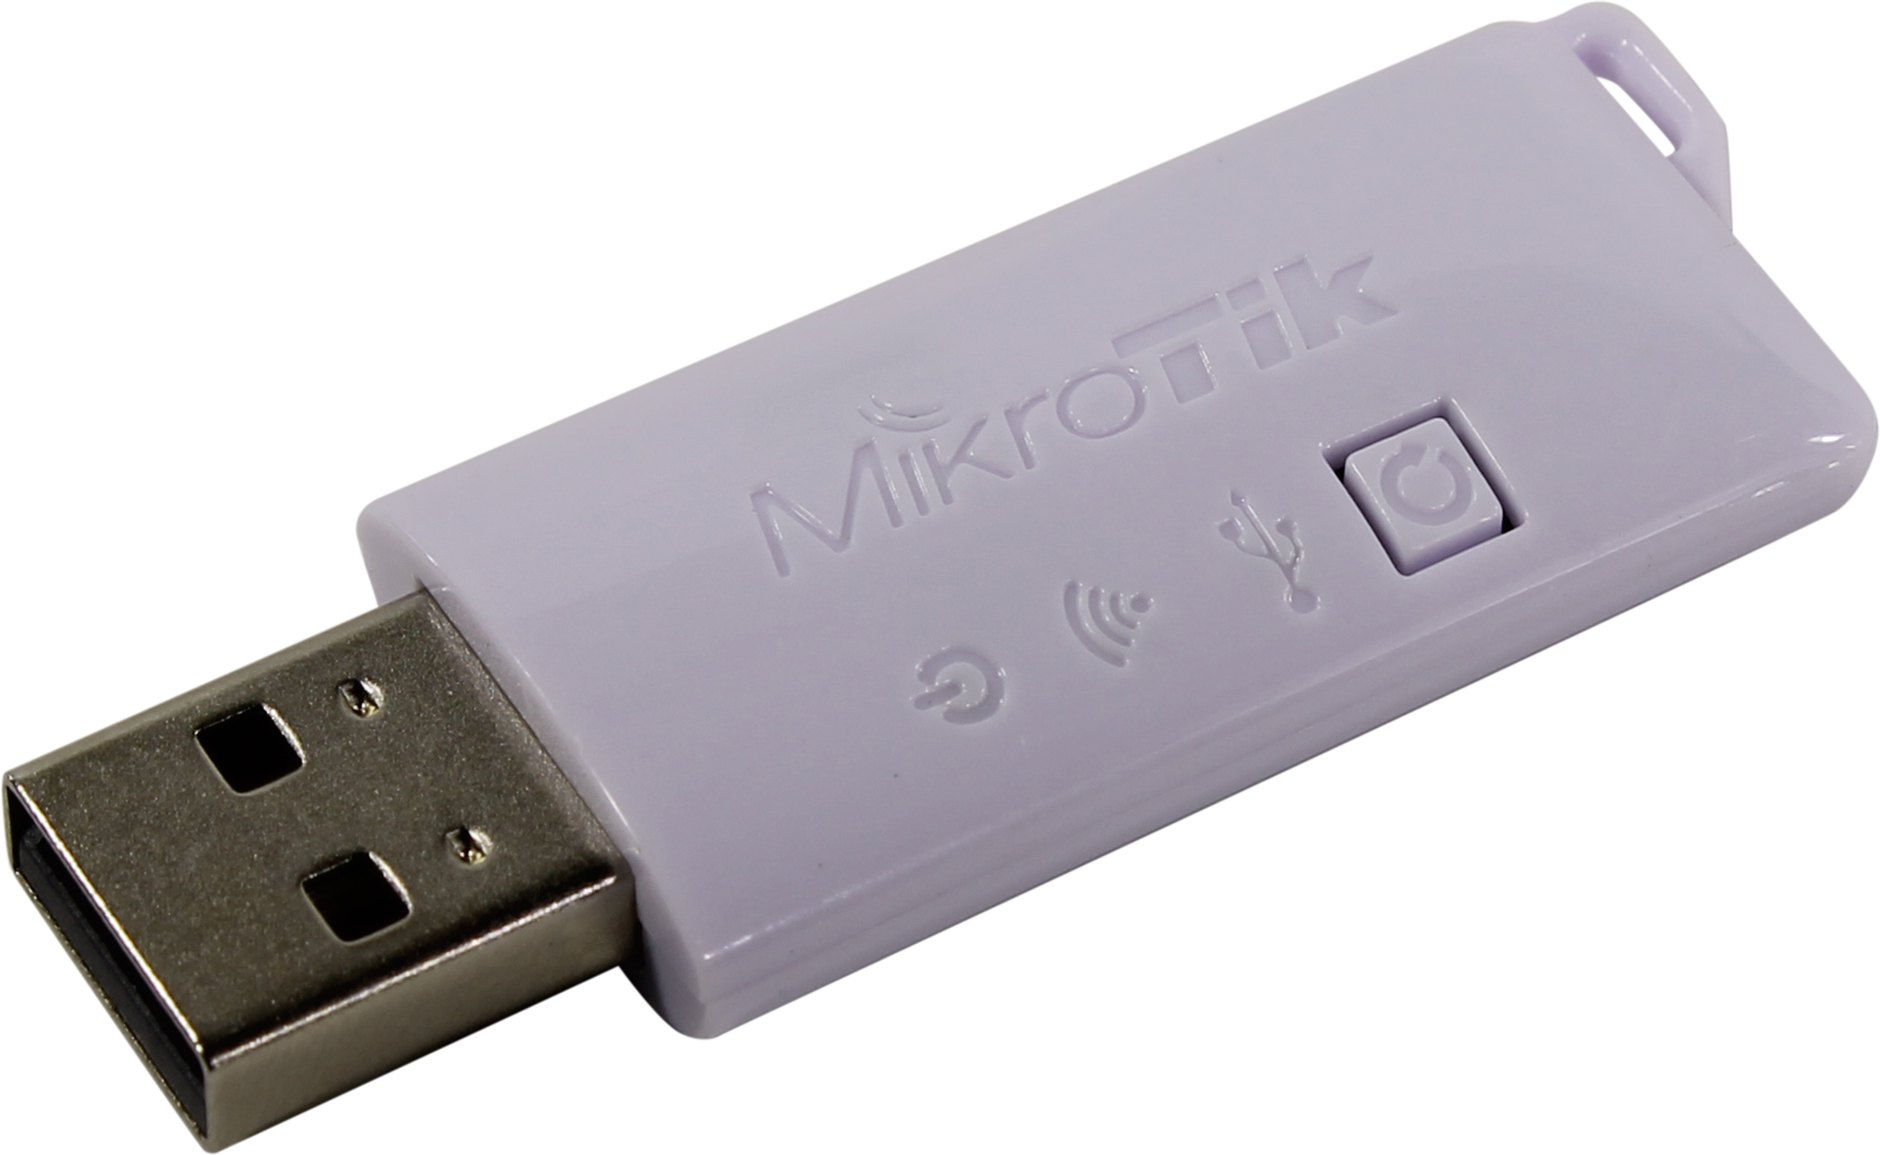 Контроллер MikroTik Woobm-USB (Только для RouterBOARD устройств!!!)